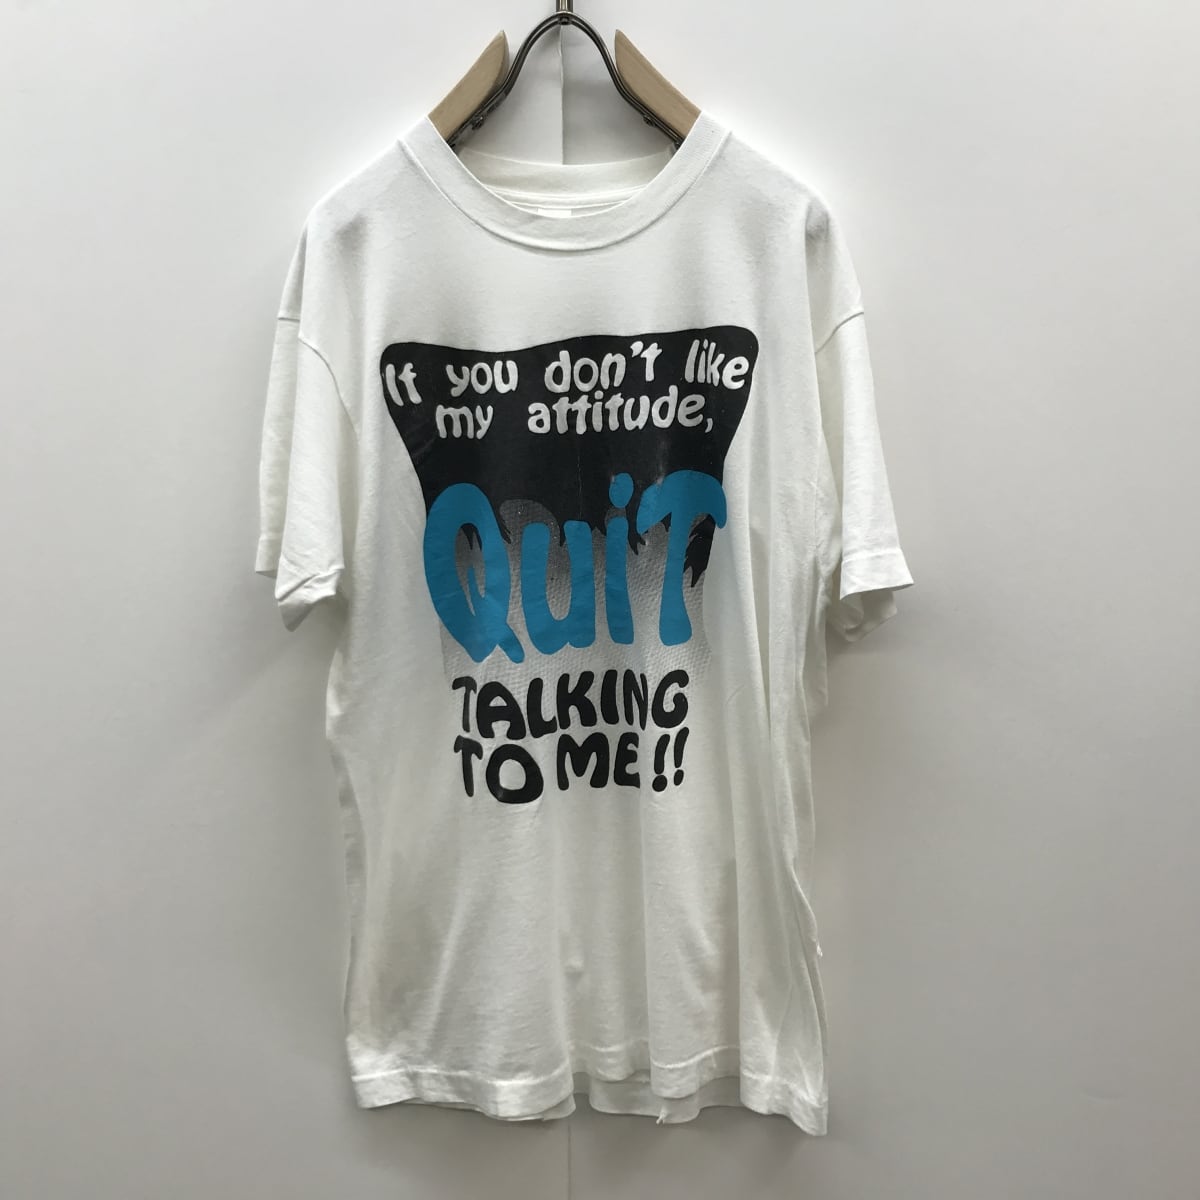 新品・未使用　ロク　ATTITUDE T-SHIRT Tシャツ